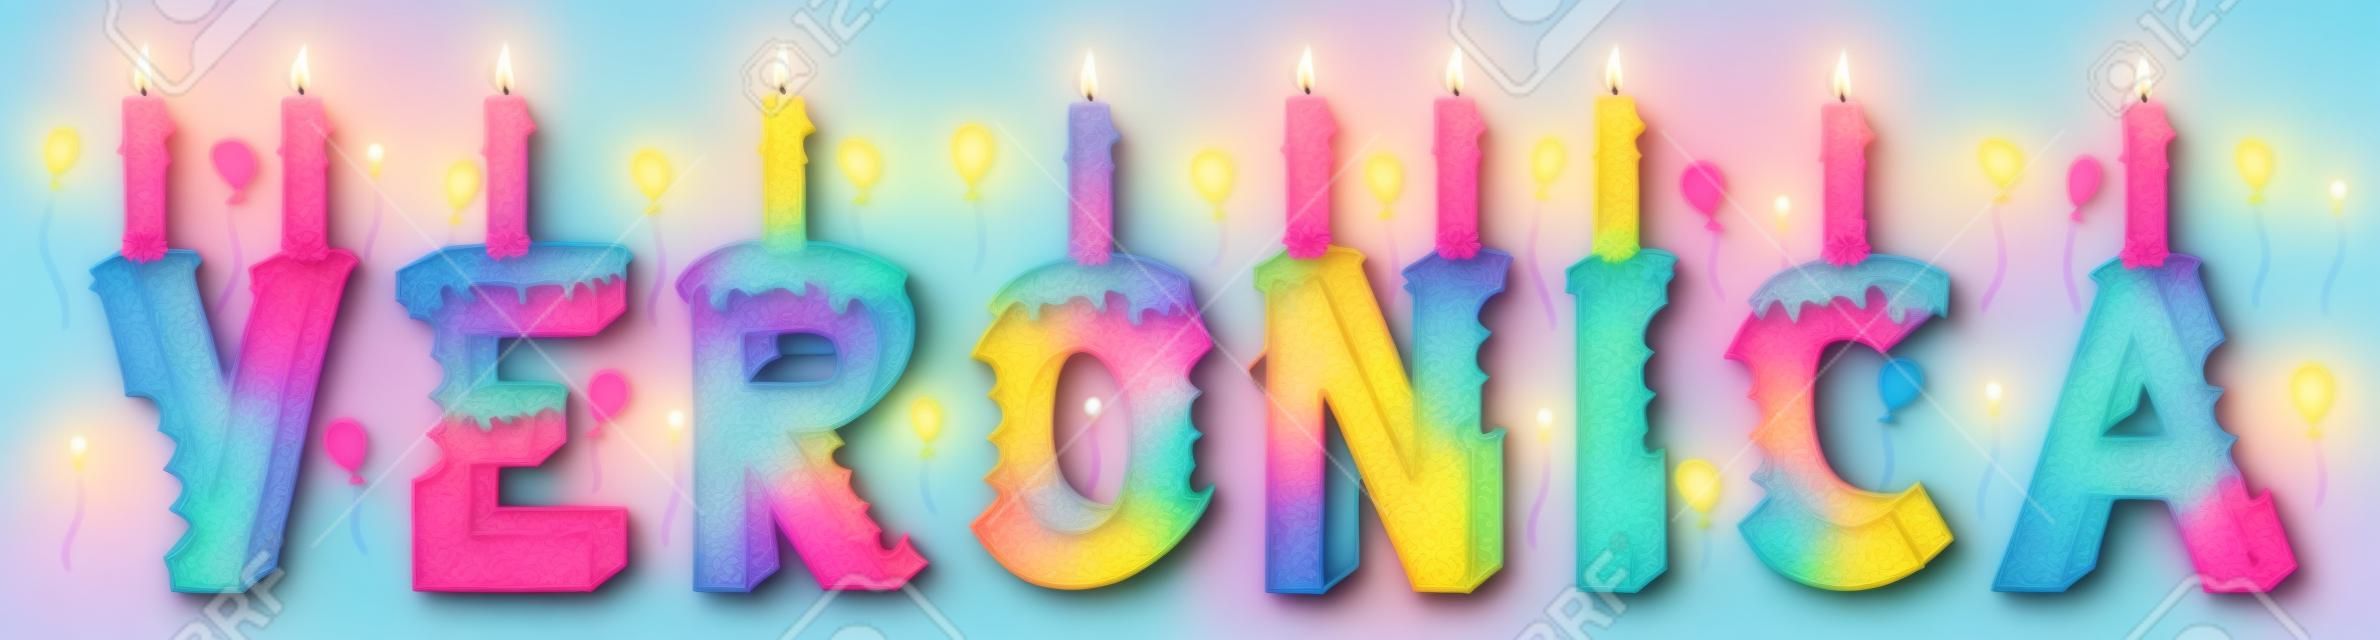 Veronica prénom féminin mordu. Gâteau d'anniversaire lettrage 3d coloré avec des bougies et des ballons.